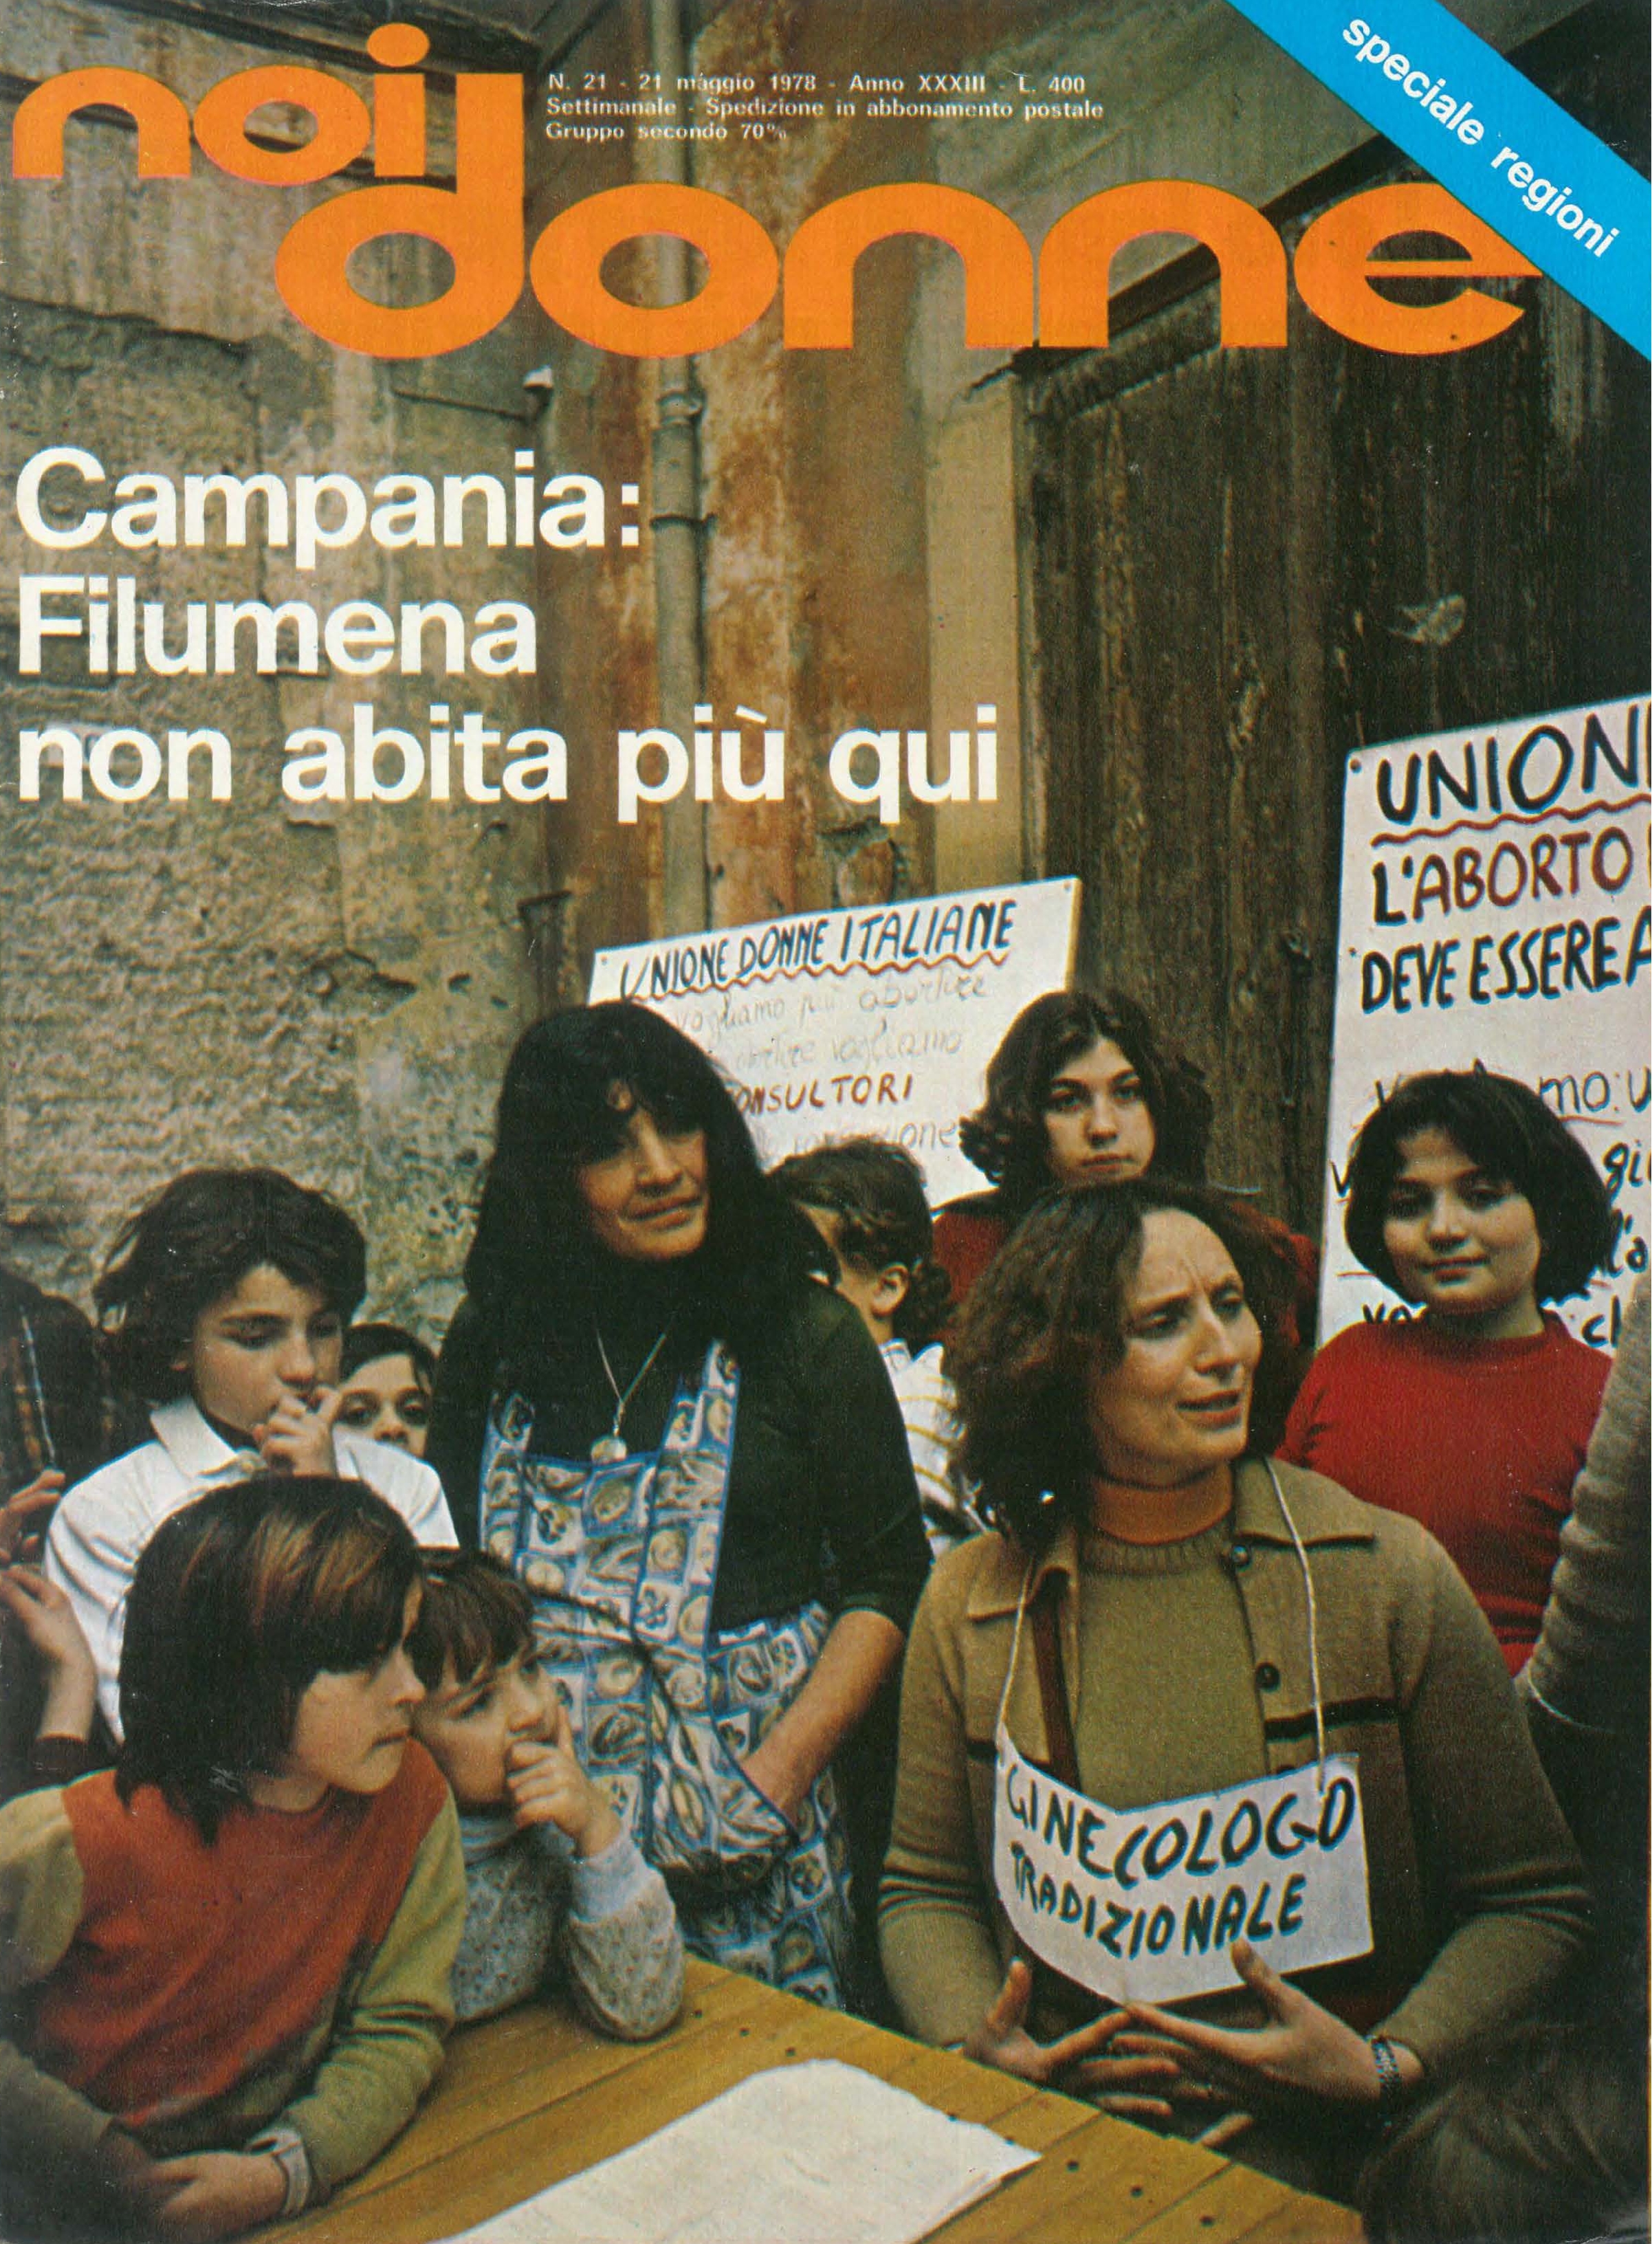 Foto: Campania: Filumena non abita più qui